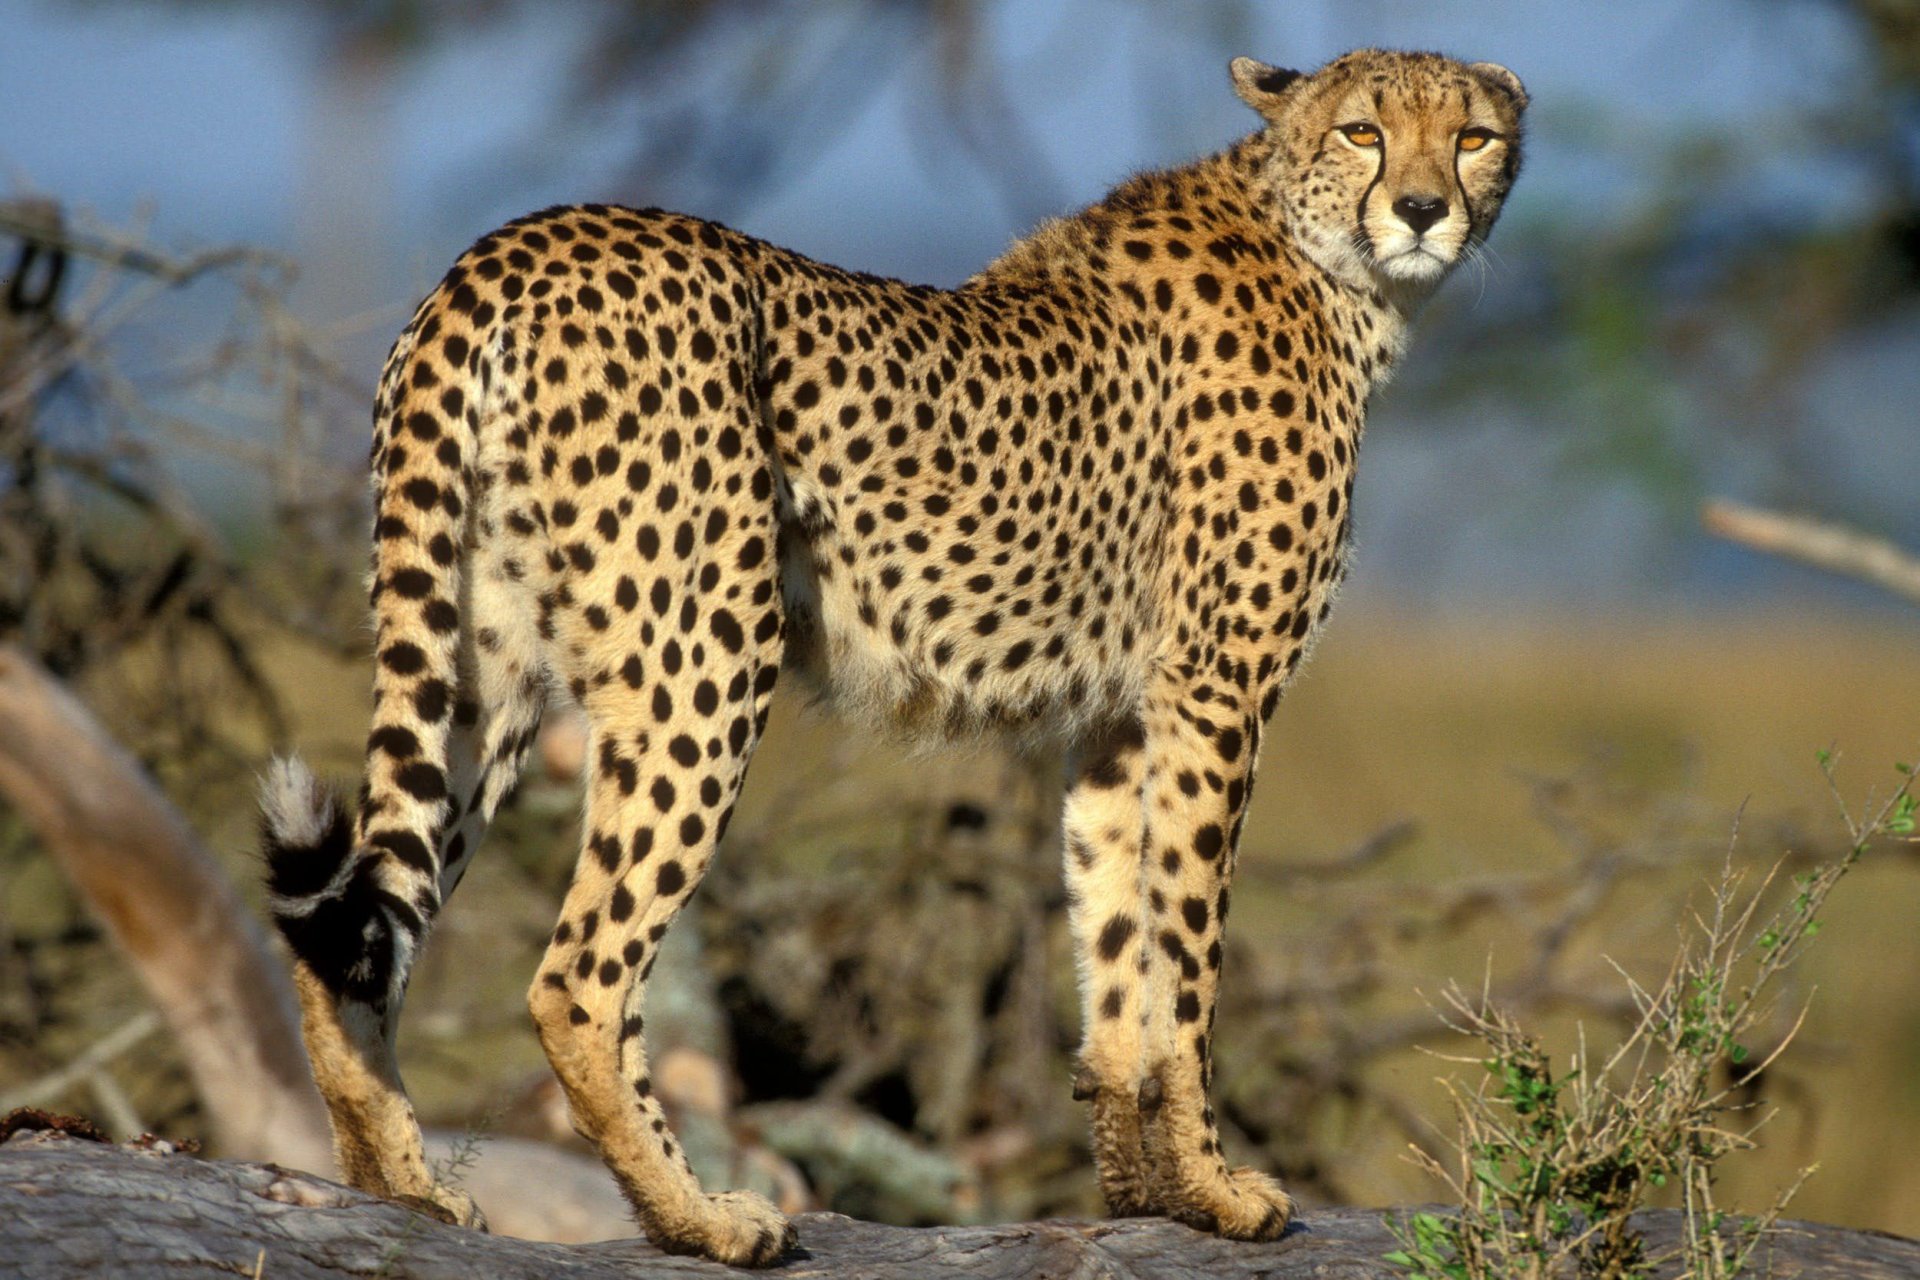 Cheetah - Here in Uganda